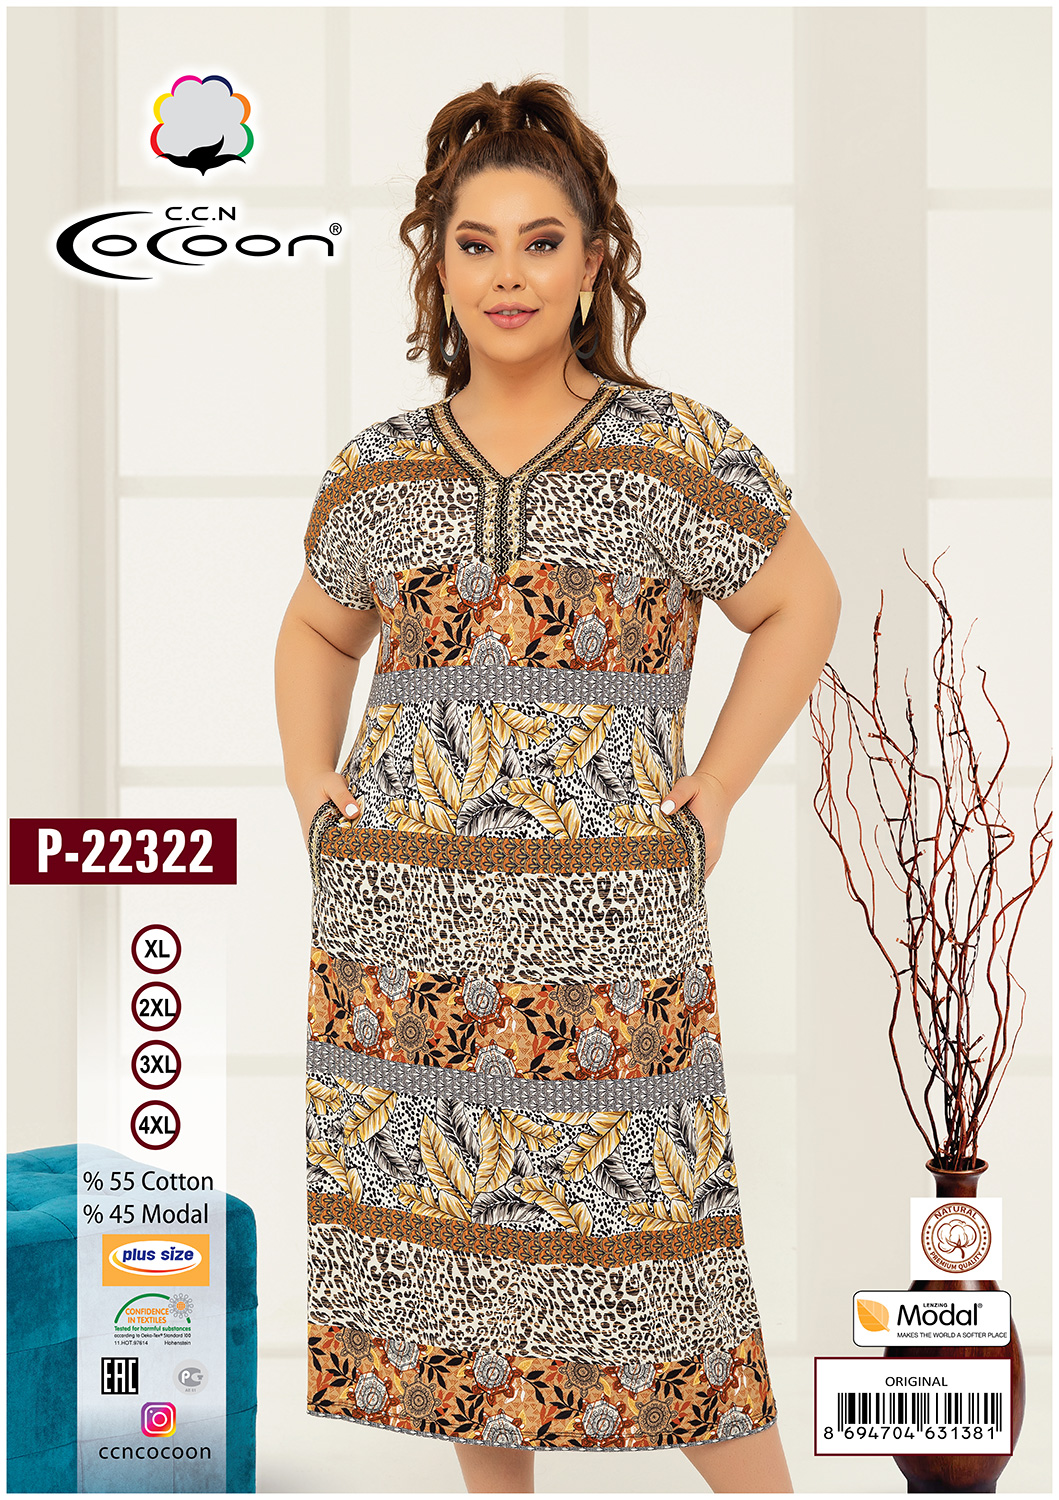 Платье из трикотажа P-22322 Cocoon рис. 1